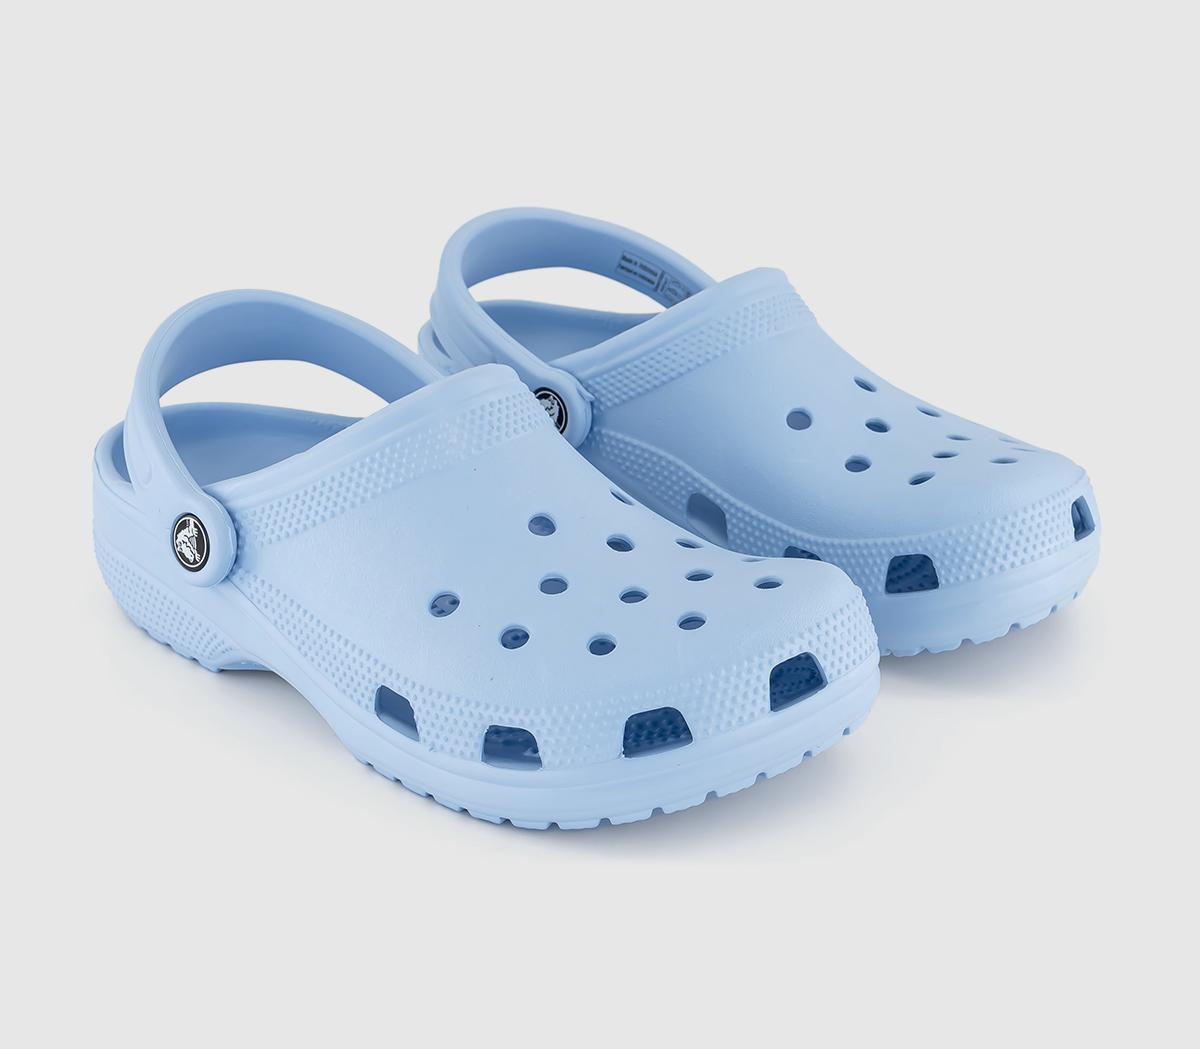 Crocs Classic Clogs Blue Calcite - Flat Shoes for Women